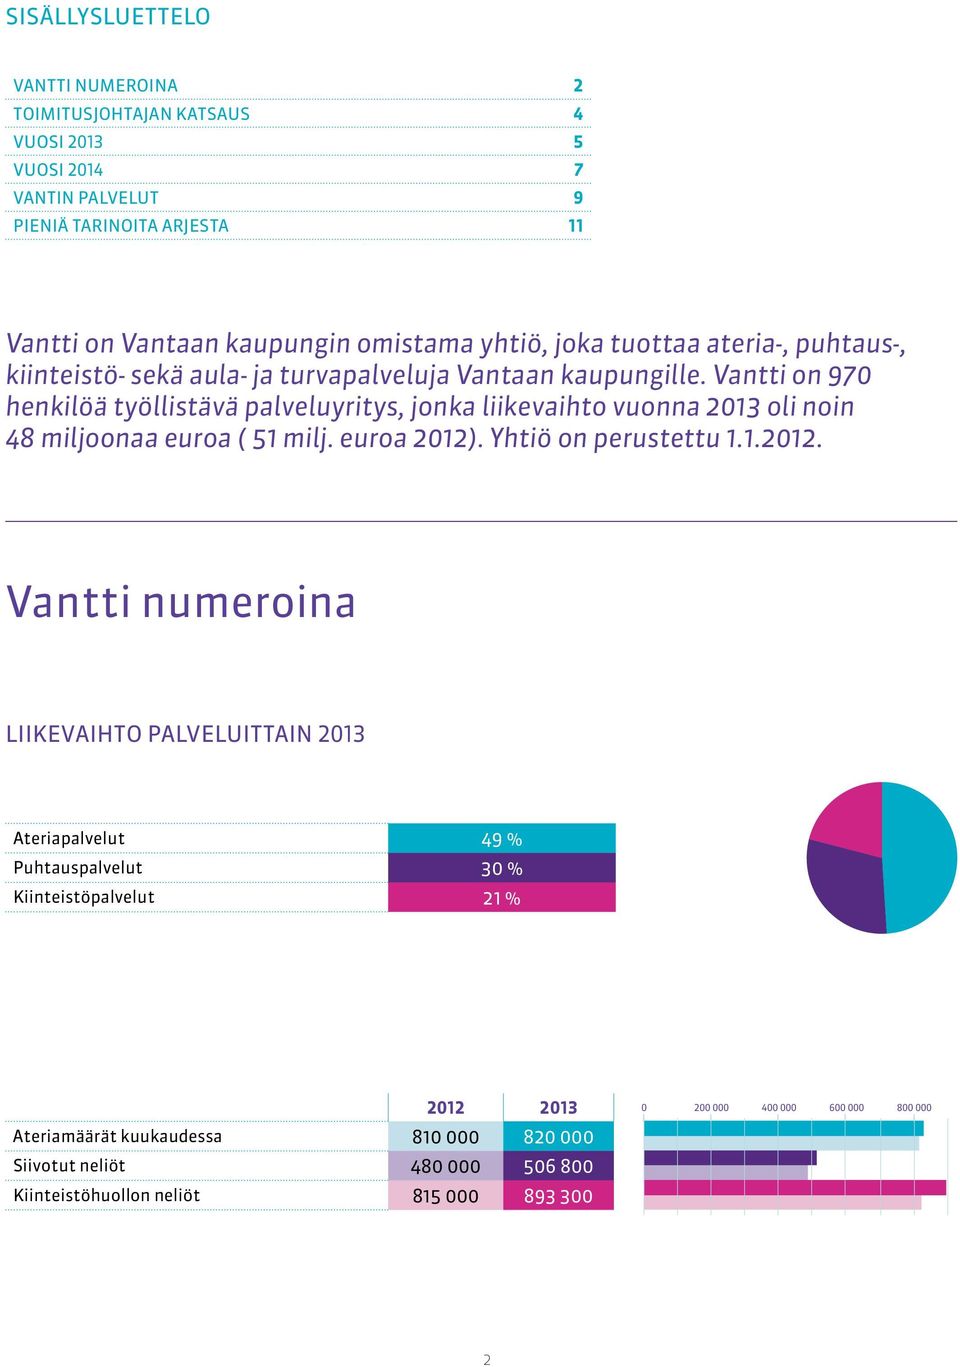 Vantti on 970 henkilöä työllistävä palveluyritys, jonka liikevaihto vuonna 2013 oli noin 48 miljoonaa euroa ( 51 milj. euroa 2012)